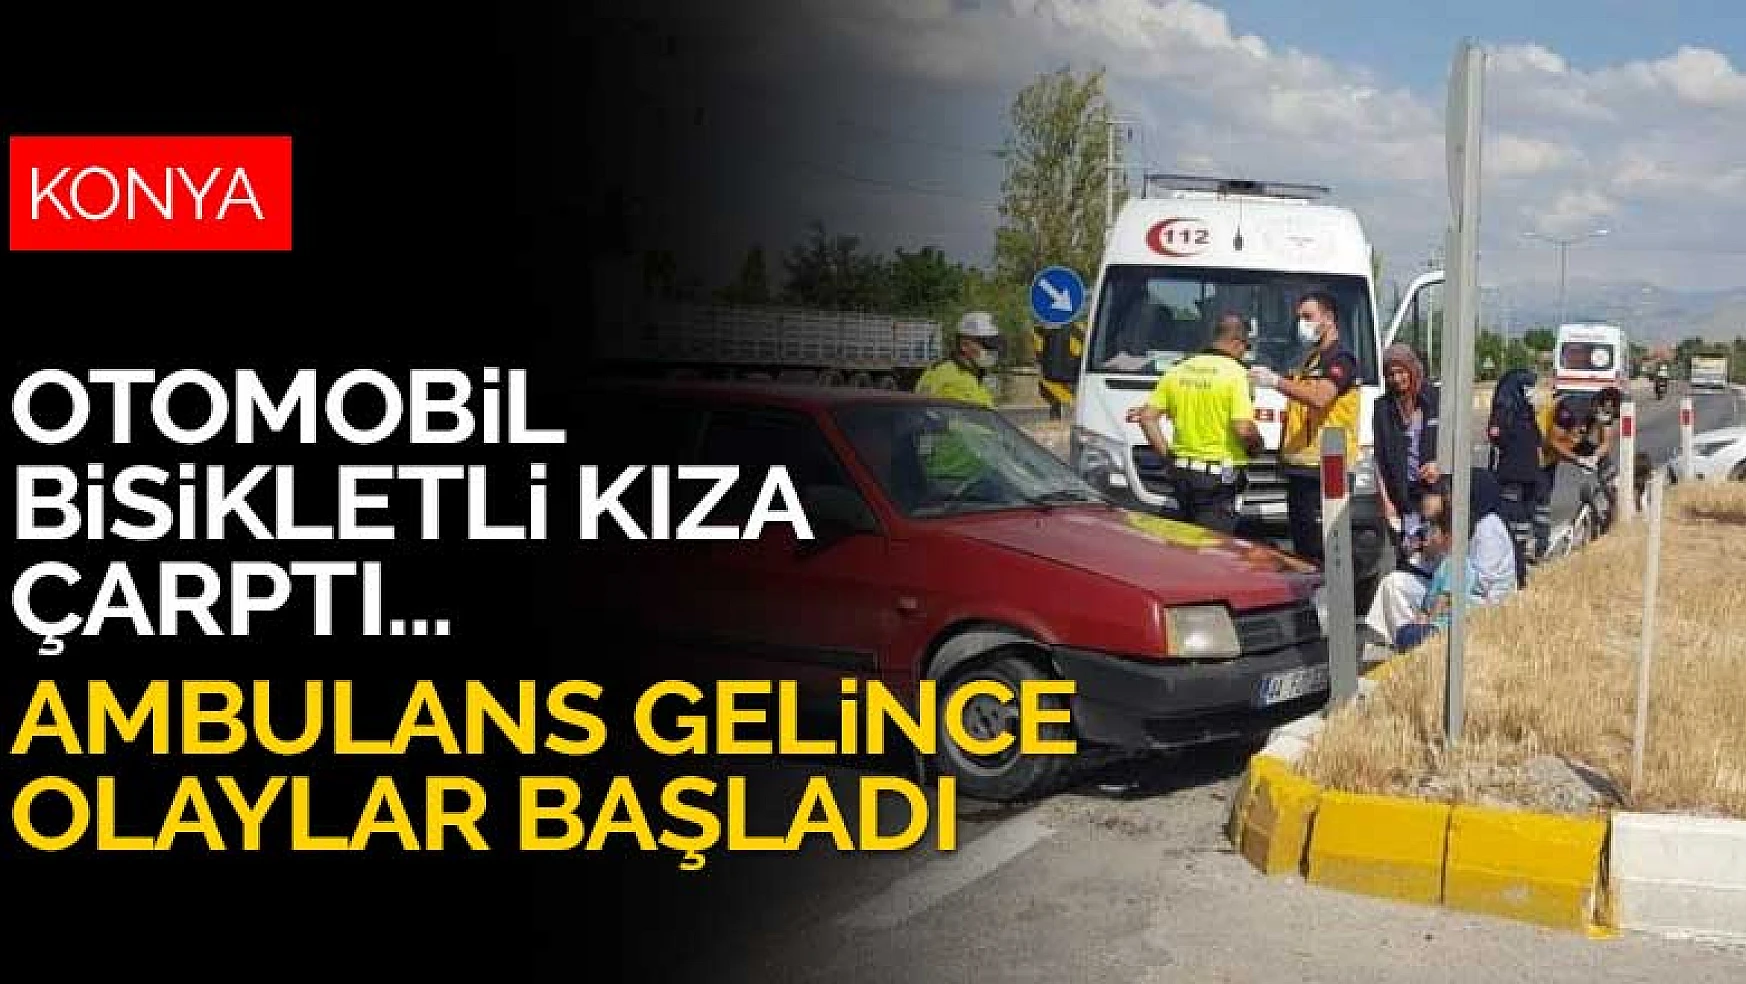 Konya'da otomobil bisikletli çocuğa çarptı! Ambulans gelince olaylar başladı